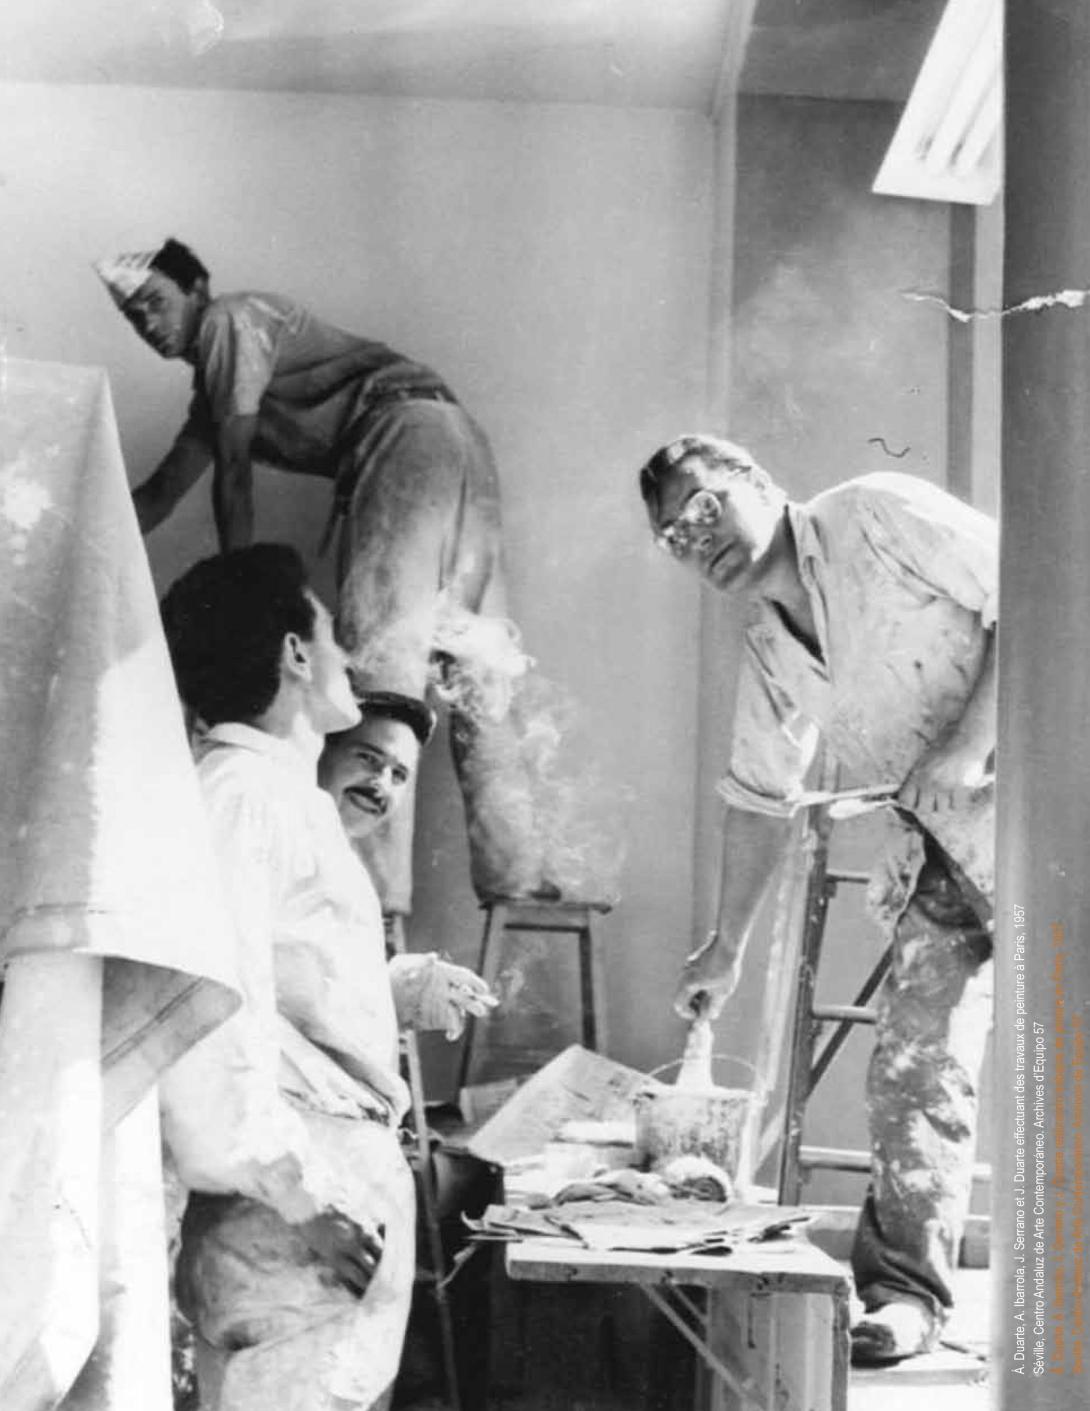 Duarte, Ibarrola, Serrano effectuant des travaux à Paris, 1957